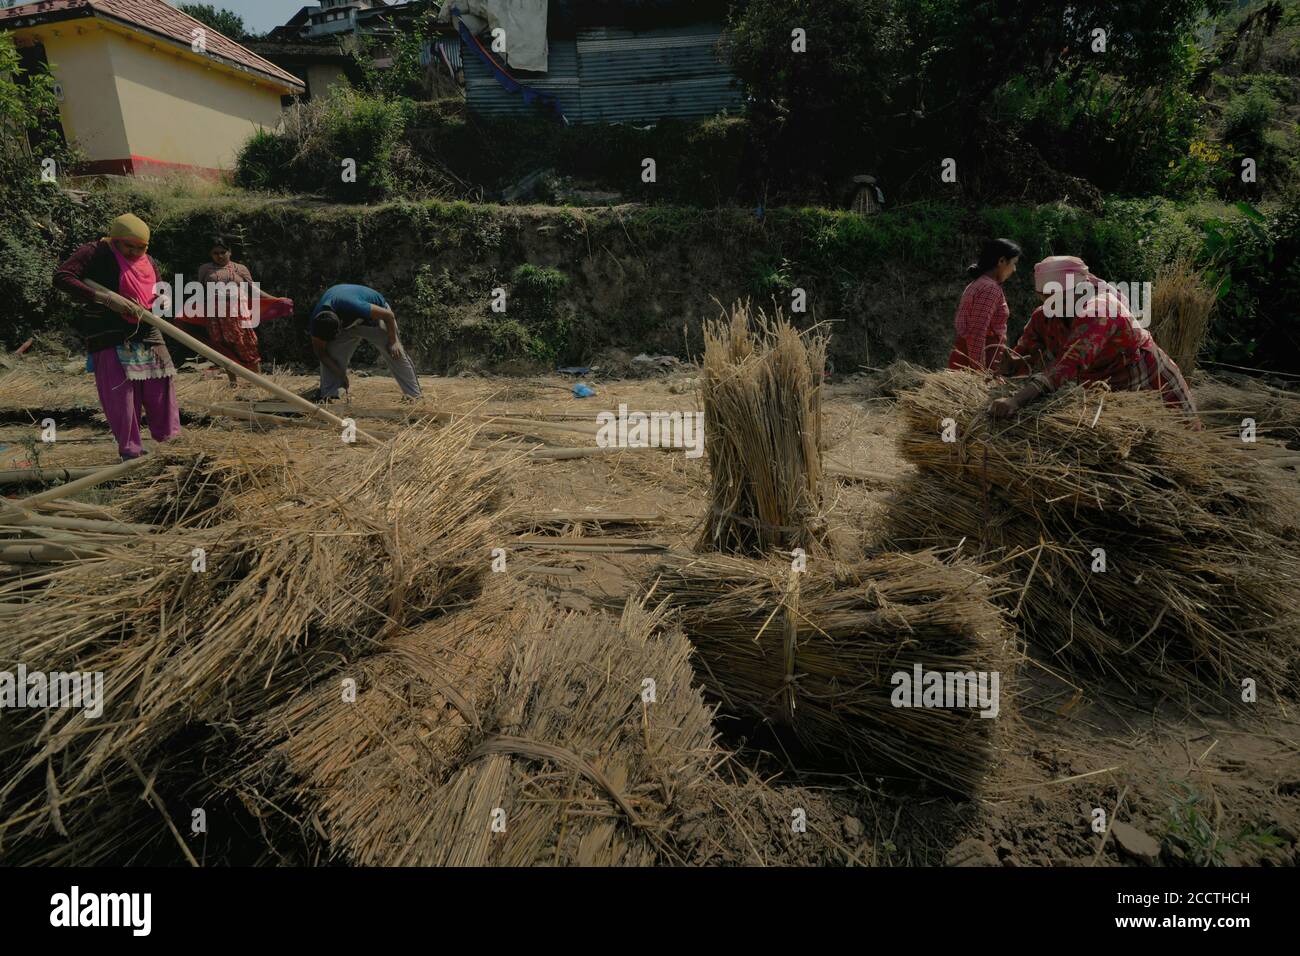 Les femmes gerbaient des wheatherb sèches à la périphérie de Bhaktapur, province de Bagmati Pradesh, au Népal. Banque D'Images